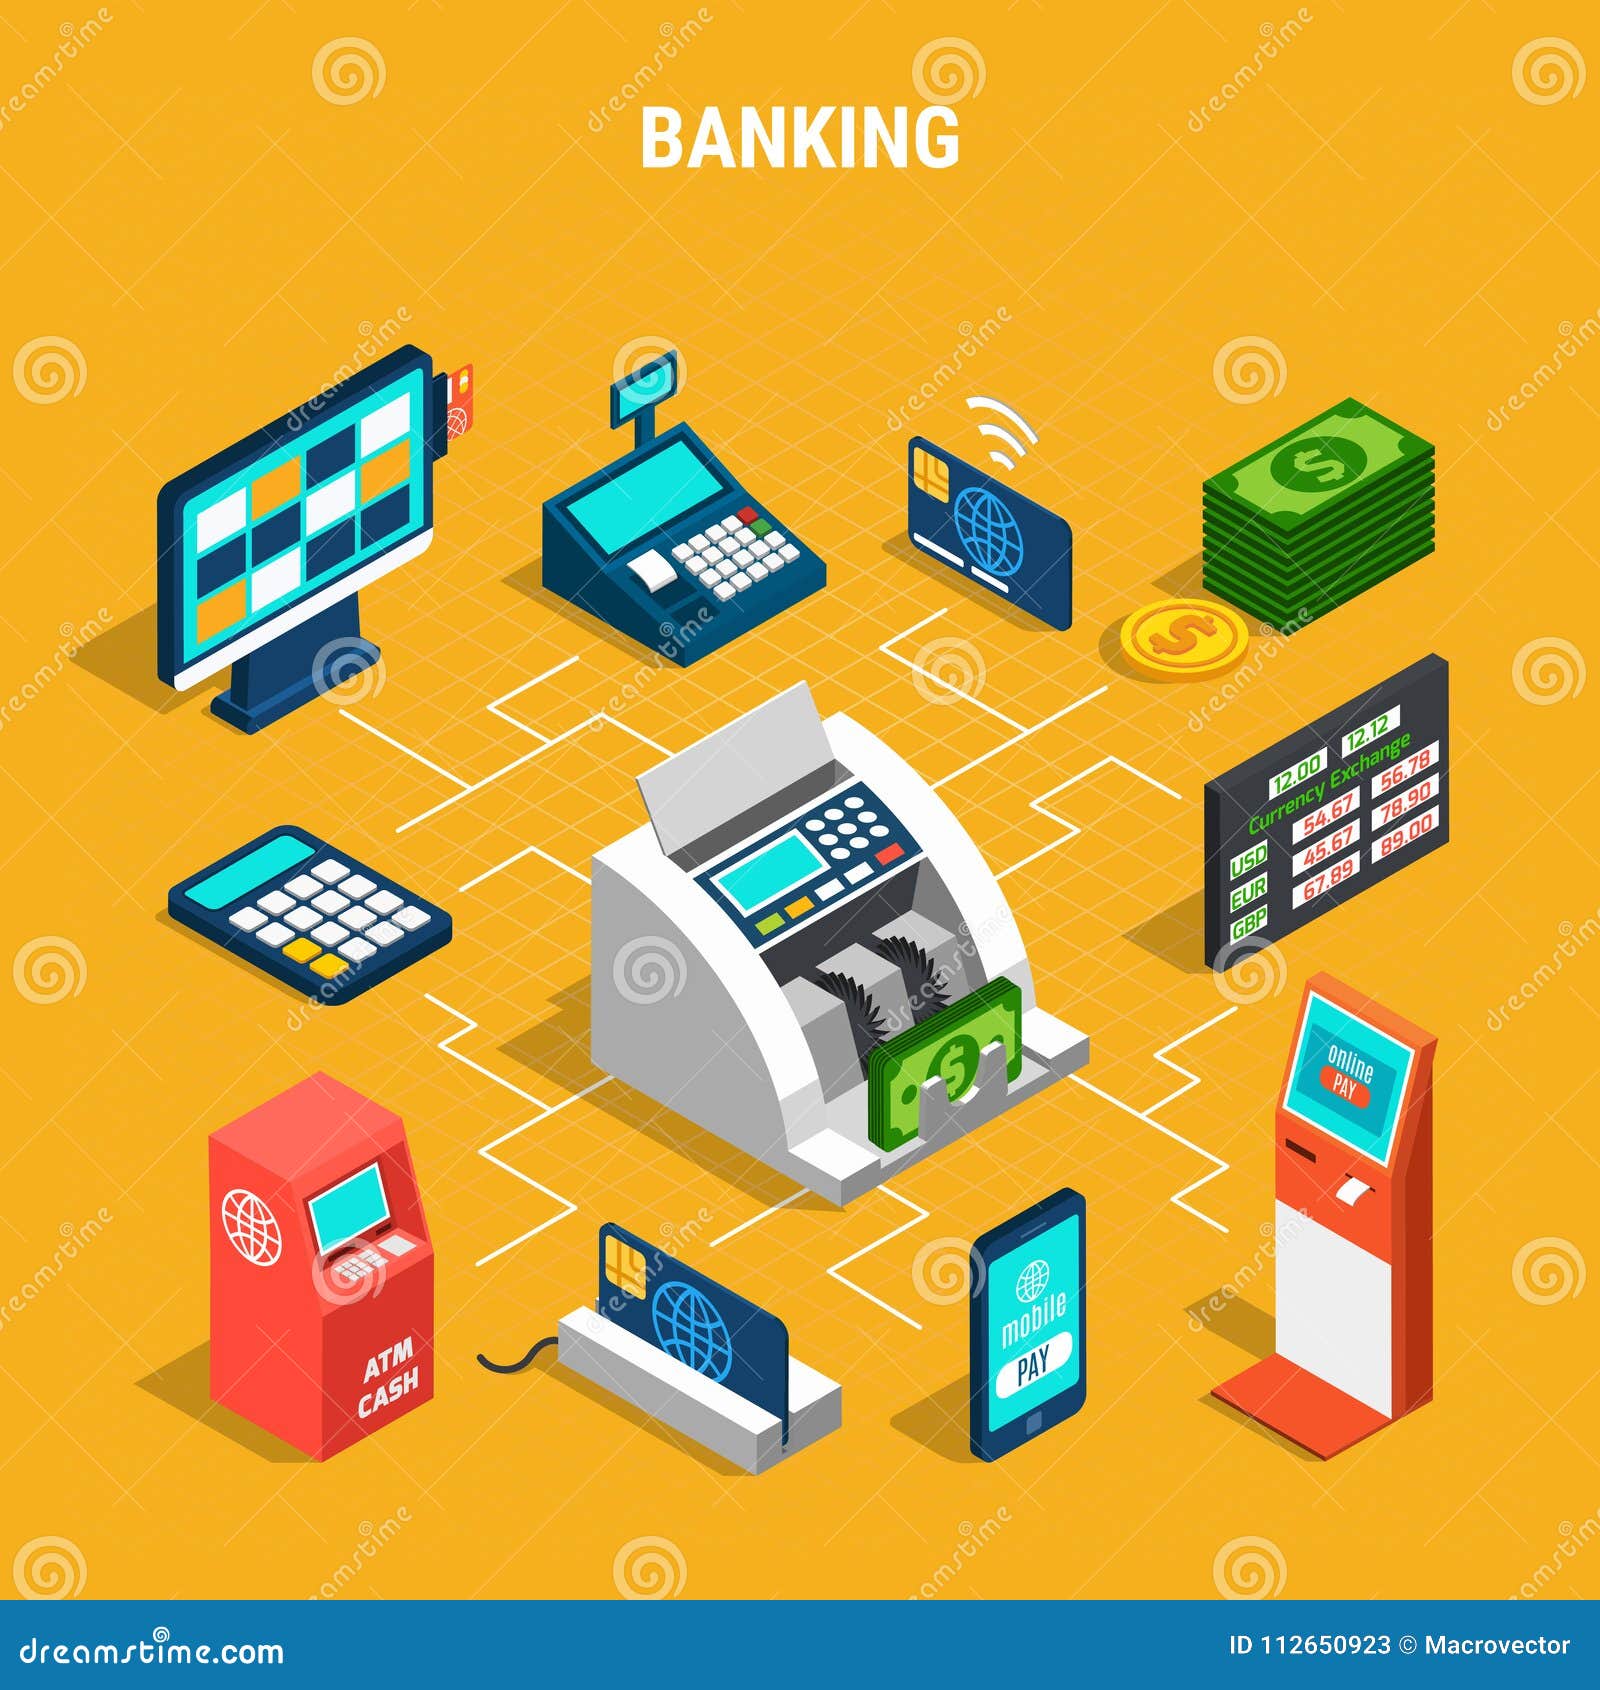 Bankoperaties isometrisch stroomschema op gele achtergrond met betalingsmateriaal, muntteller en geld vectorillustratie